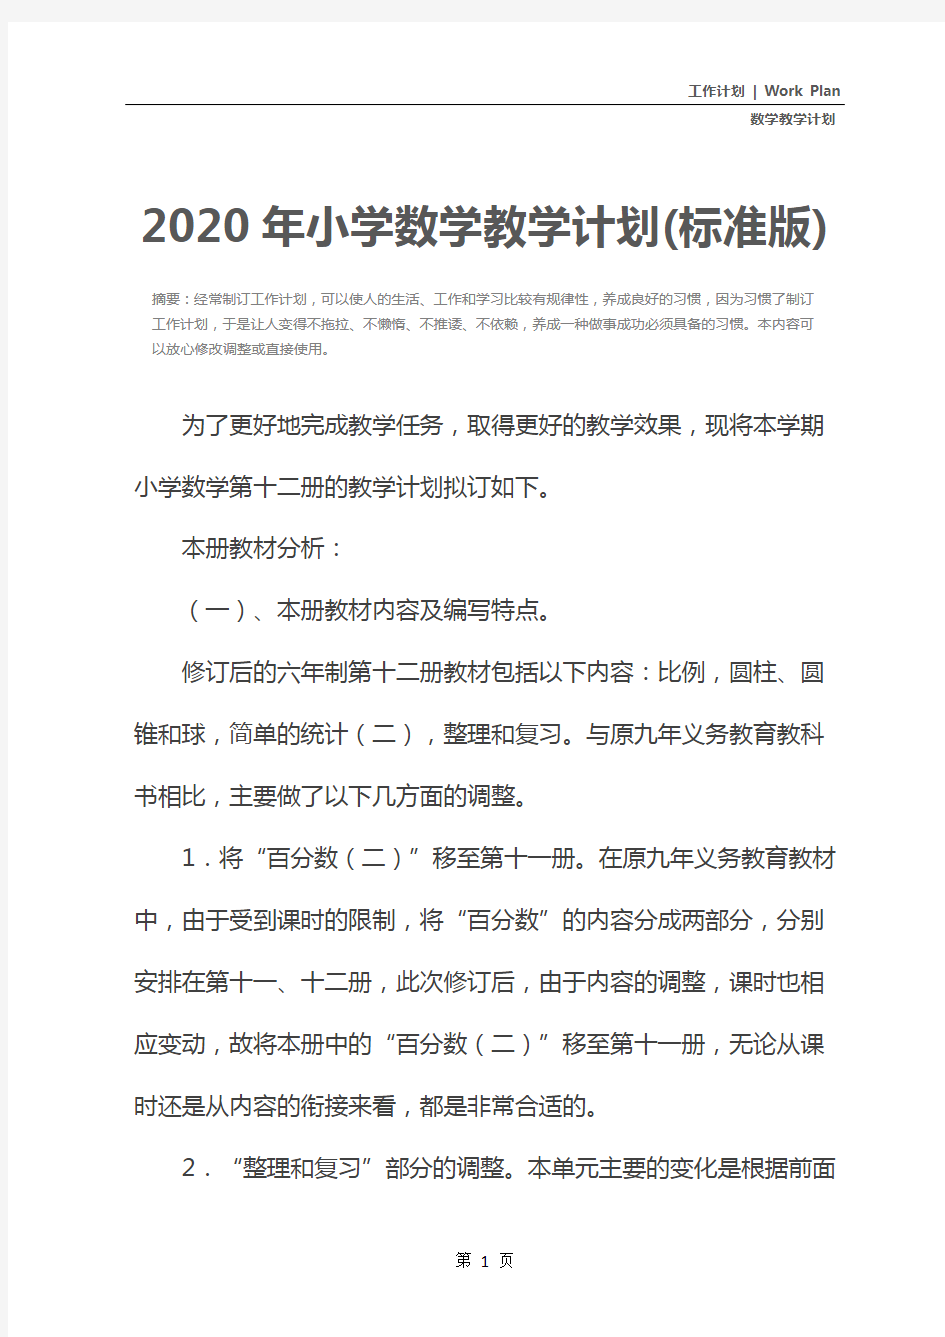 2020年小学数学教学计划(标准版)